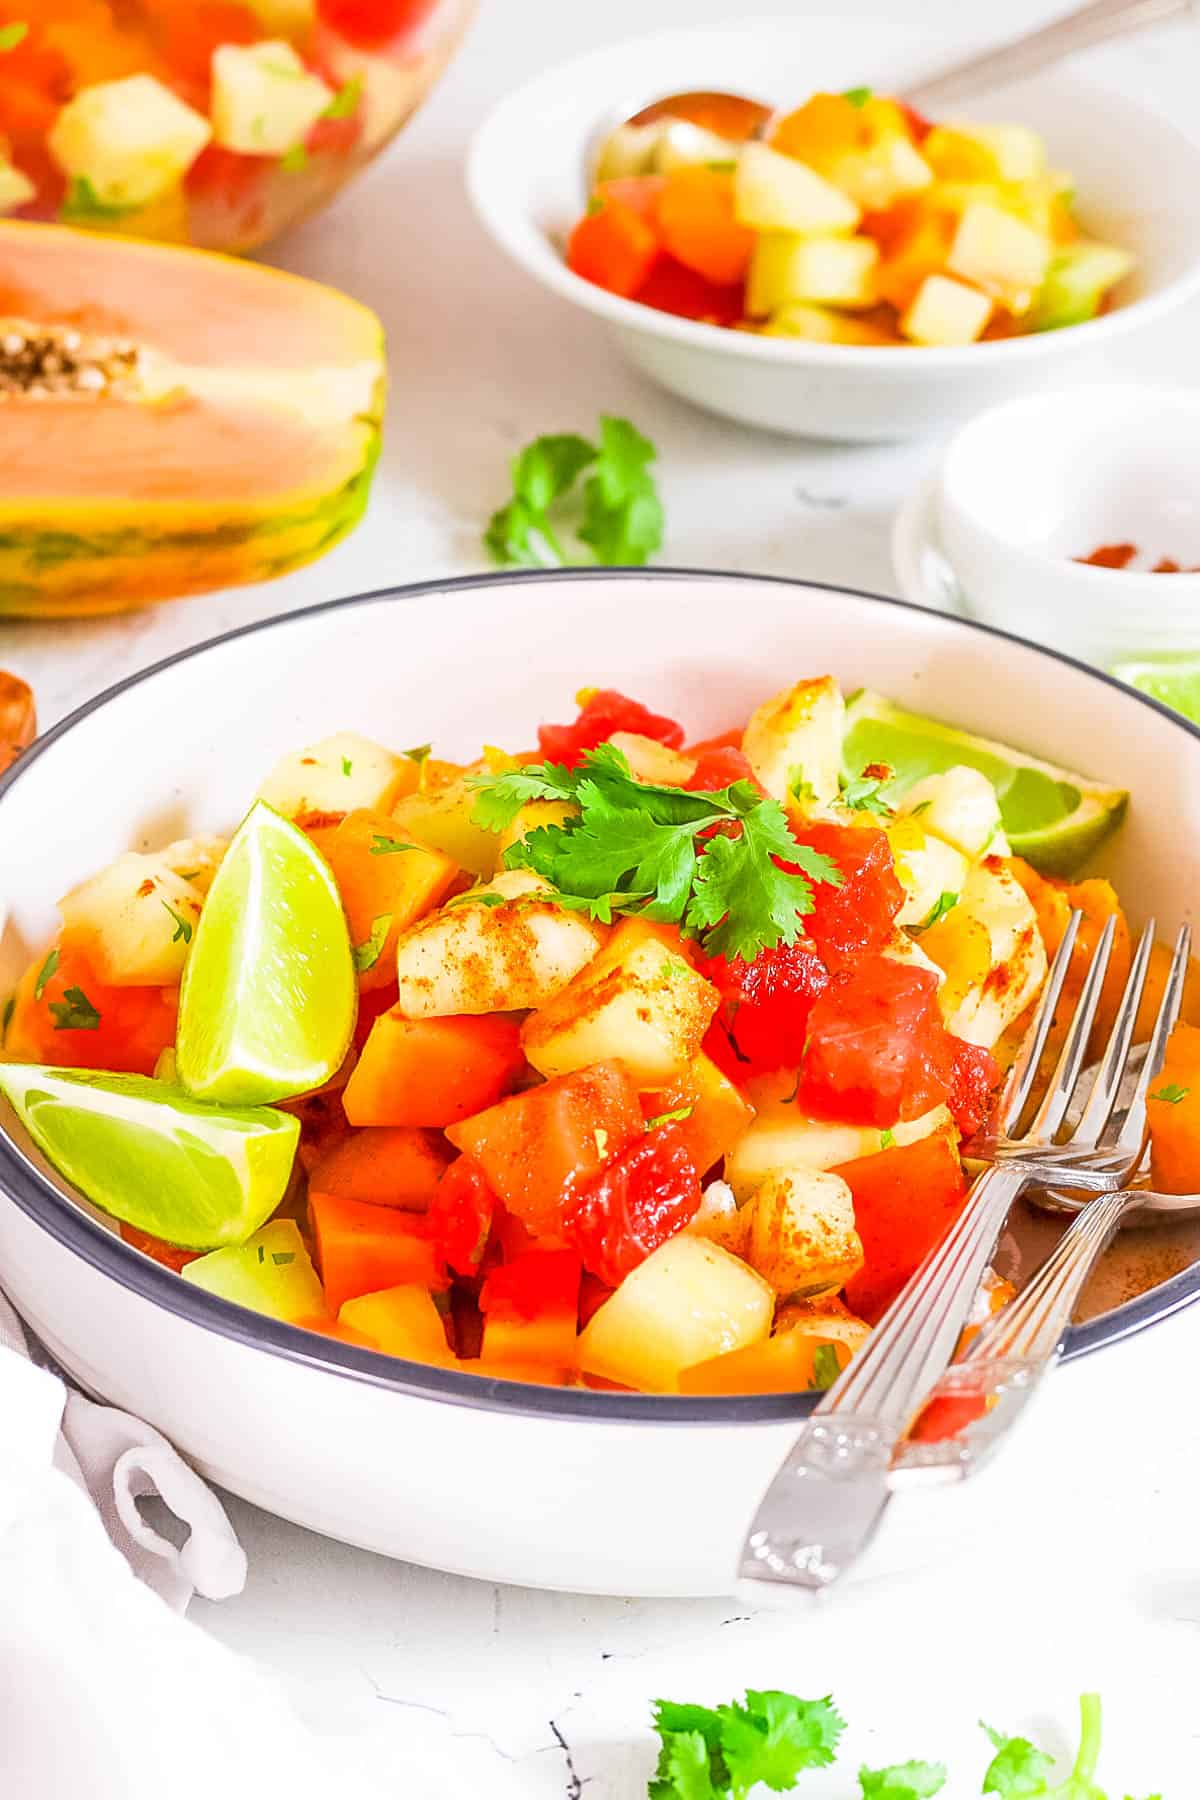 Mexikanischer Obstsalat mit Chili-Limetten-Gewürz, Koriander und frischer Limette, serviert in einer Schüssel mit einer Gabel.